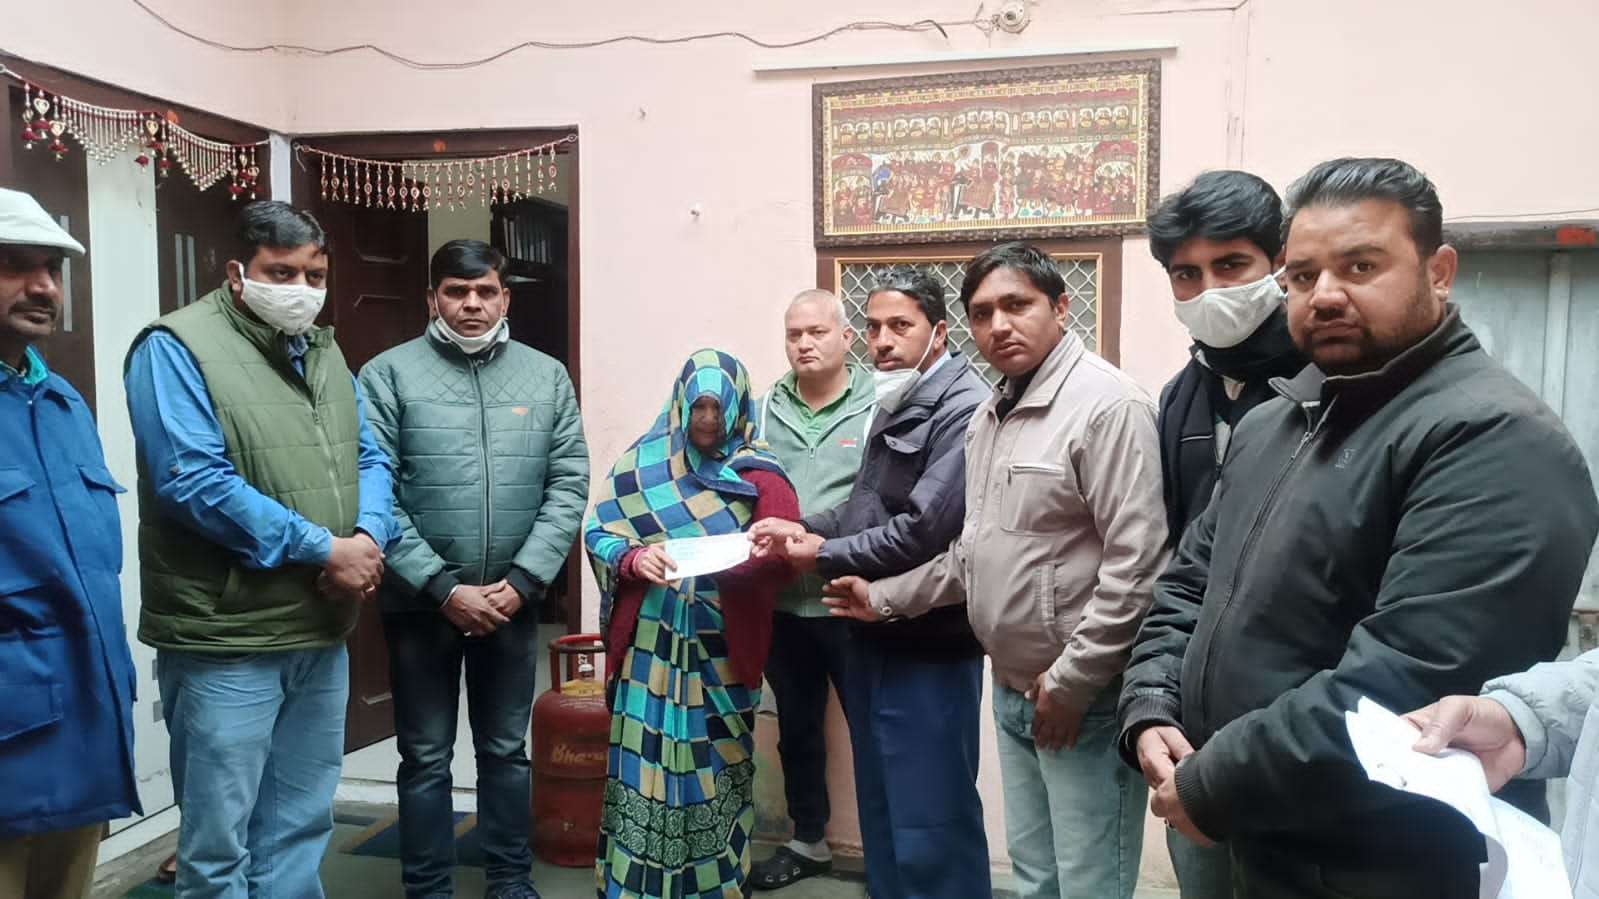 अभिभाषक संस्था शाहपुरा ने एडवोकेट व्यास के निधन पर सौंपी सहायता राशि